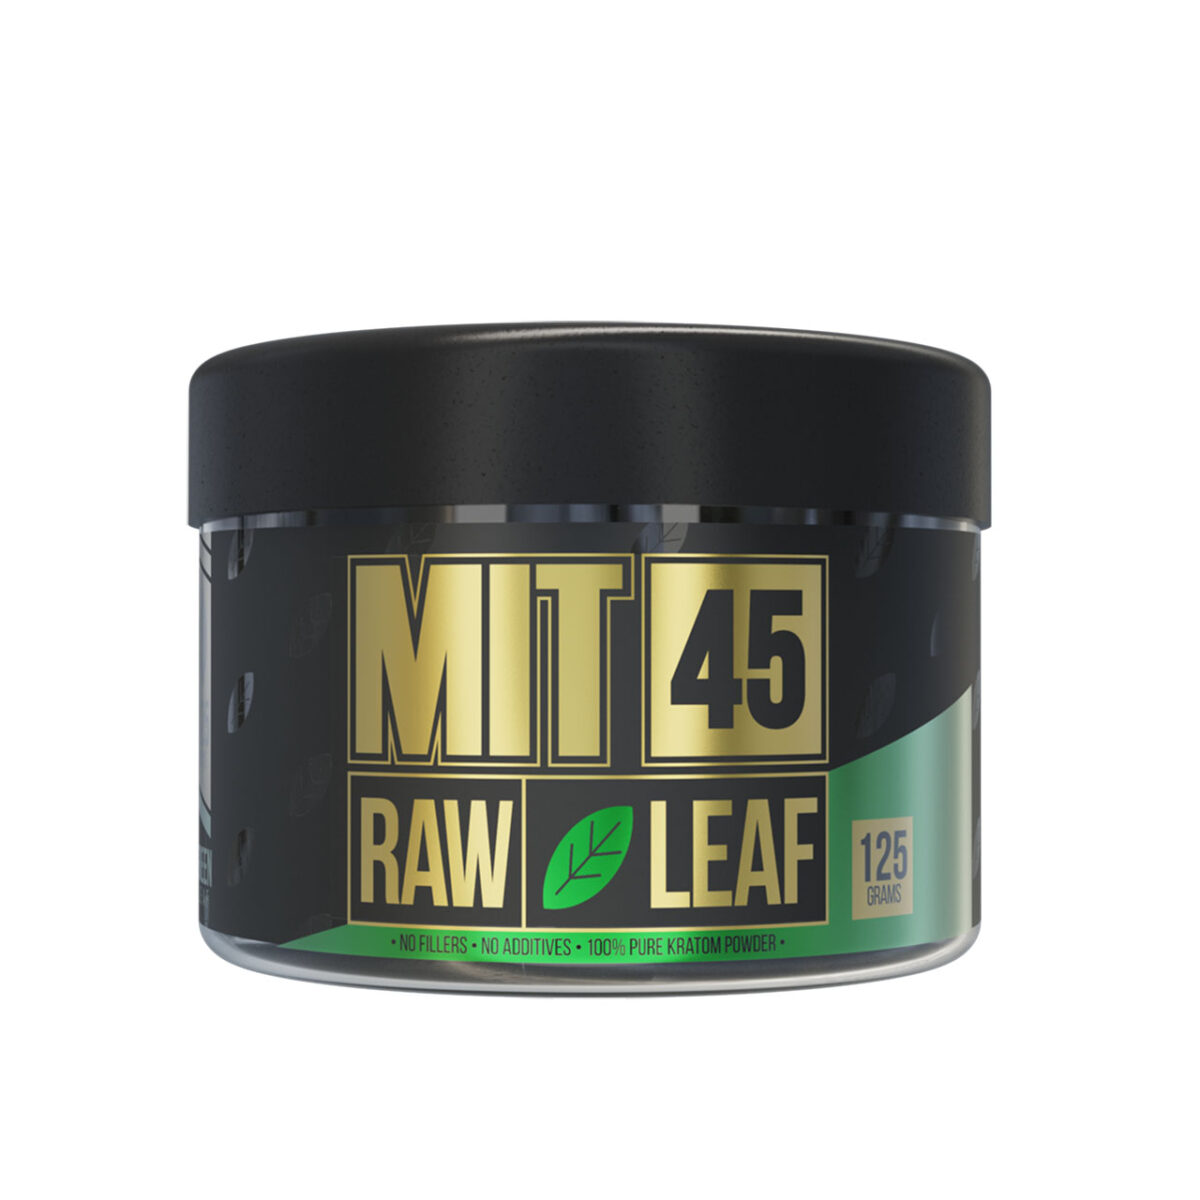 MIT 45 Raw Green Leaf Kratom Powder